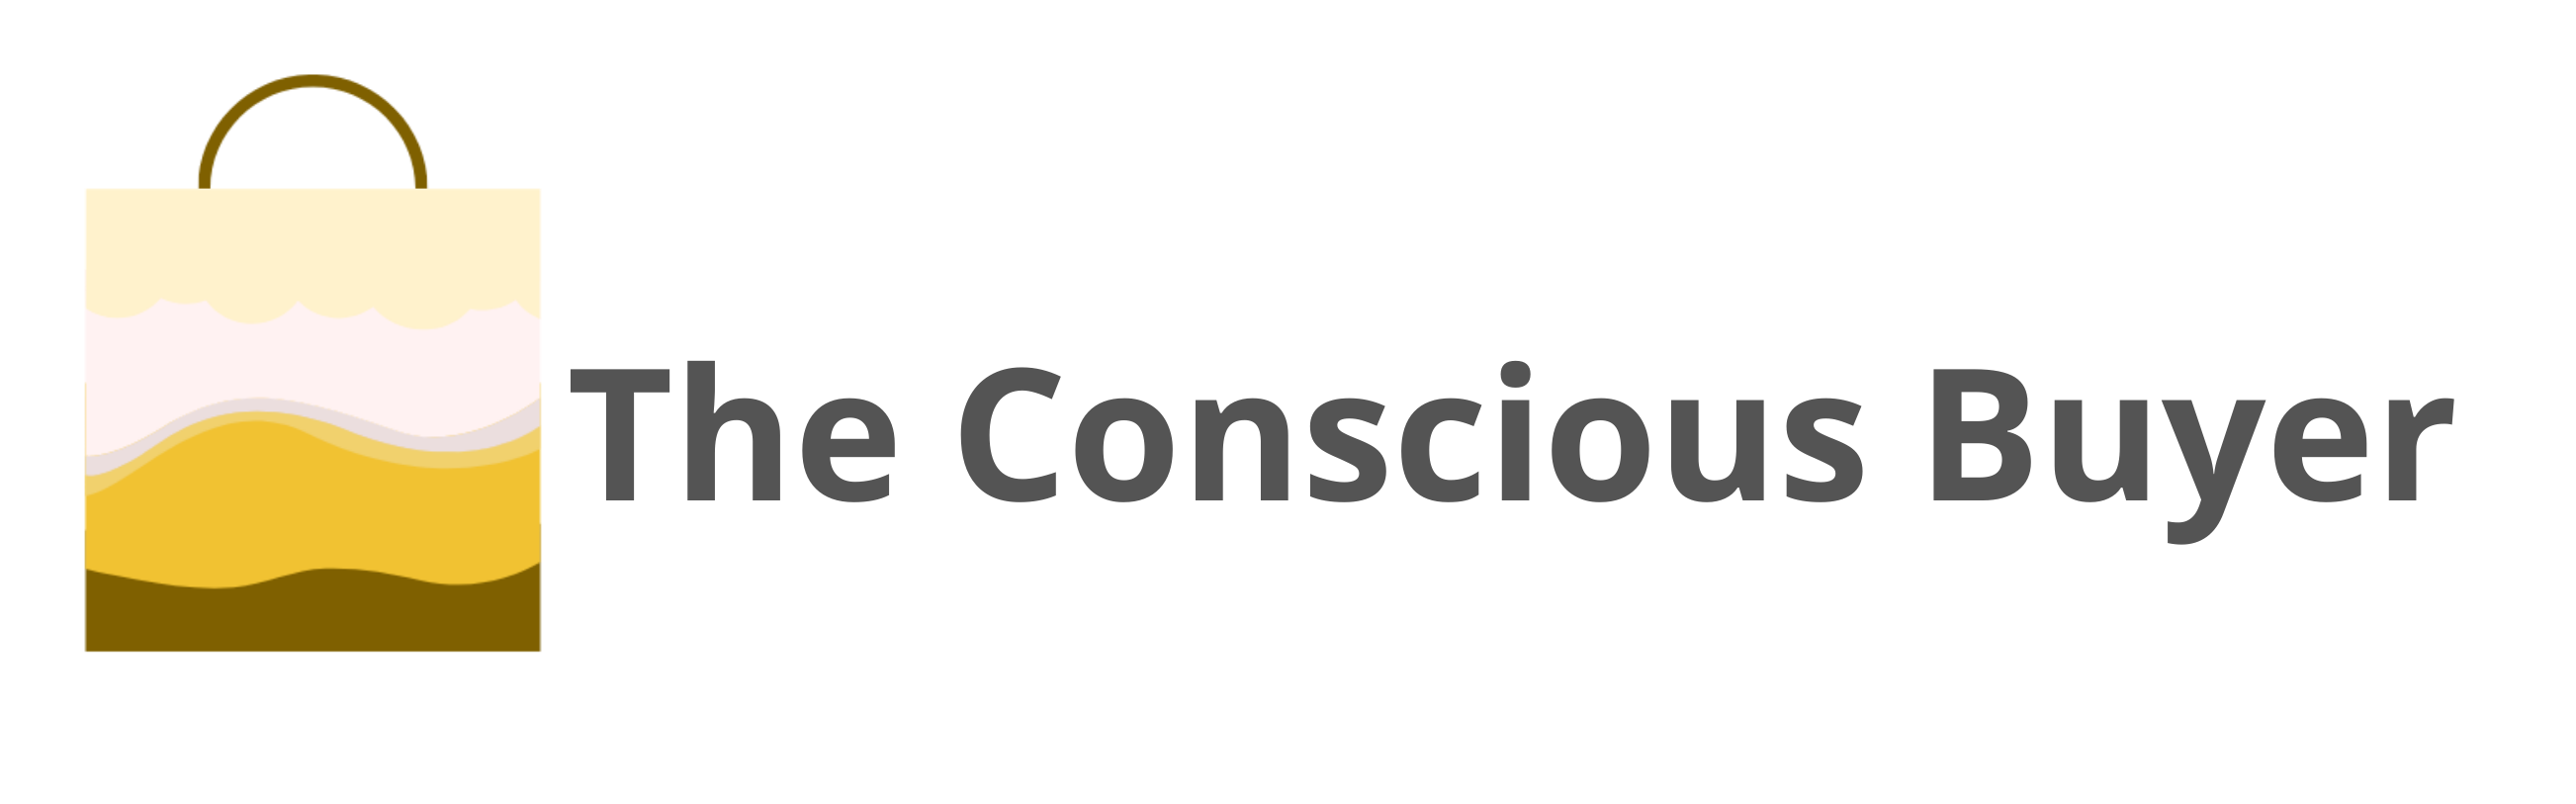 the conscious buyer logo